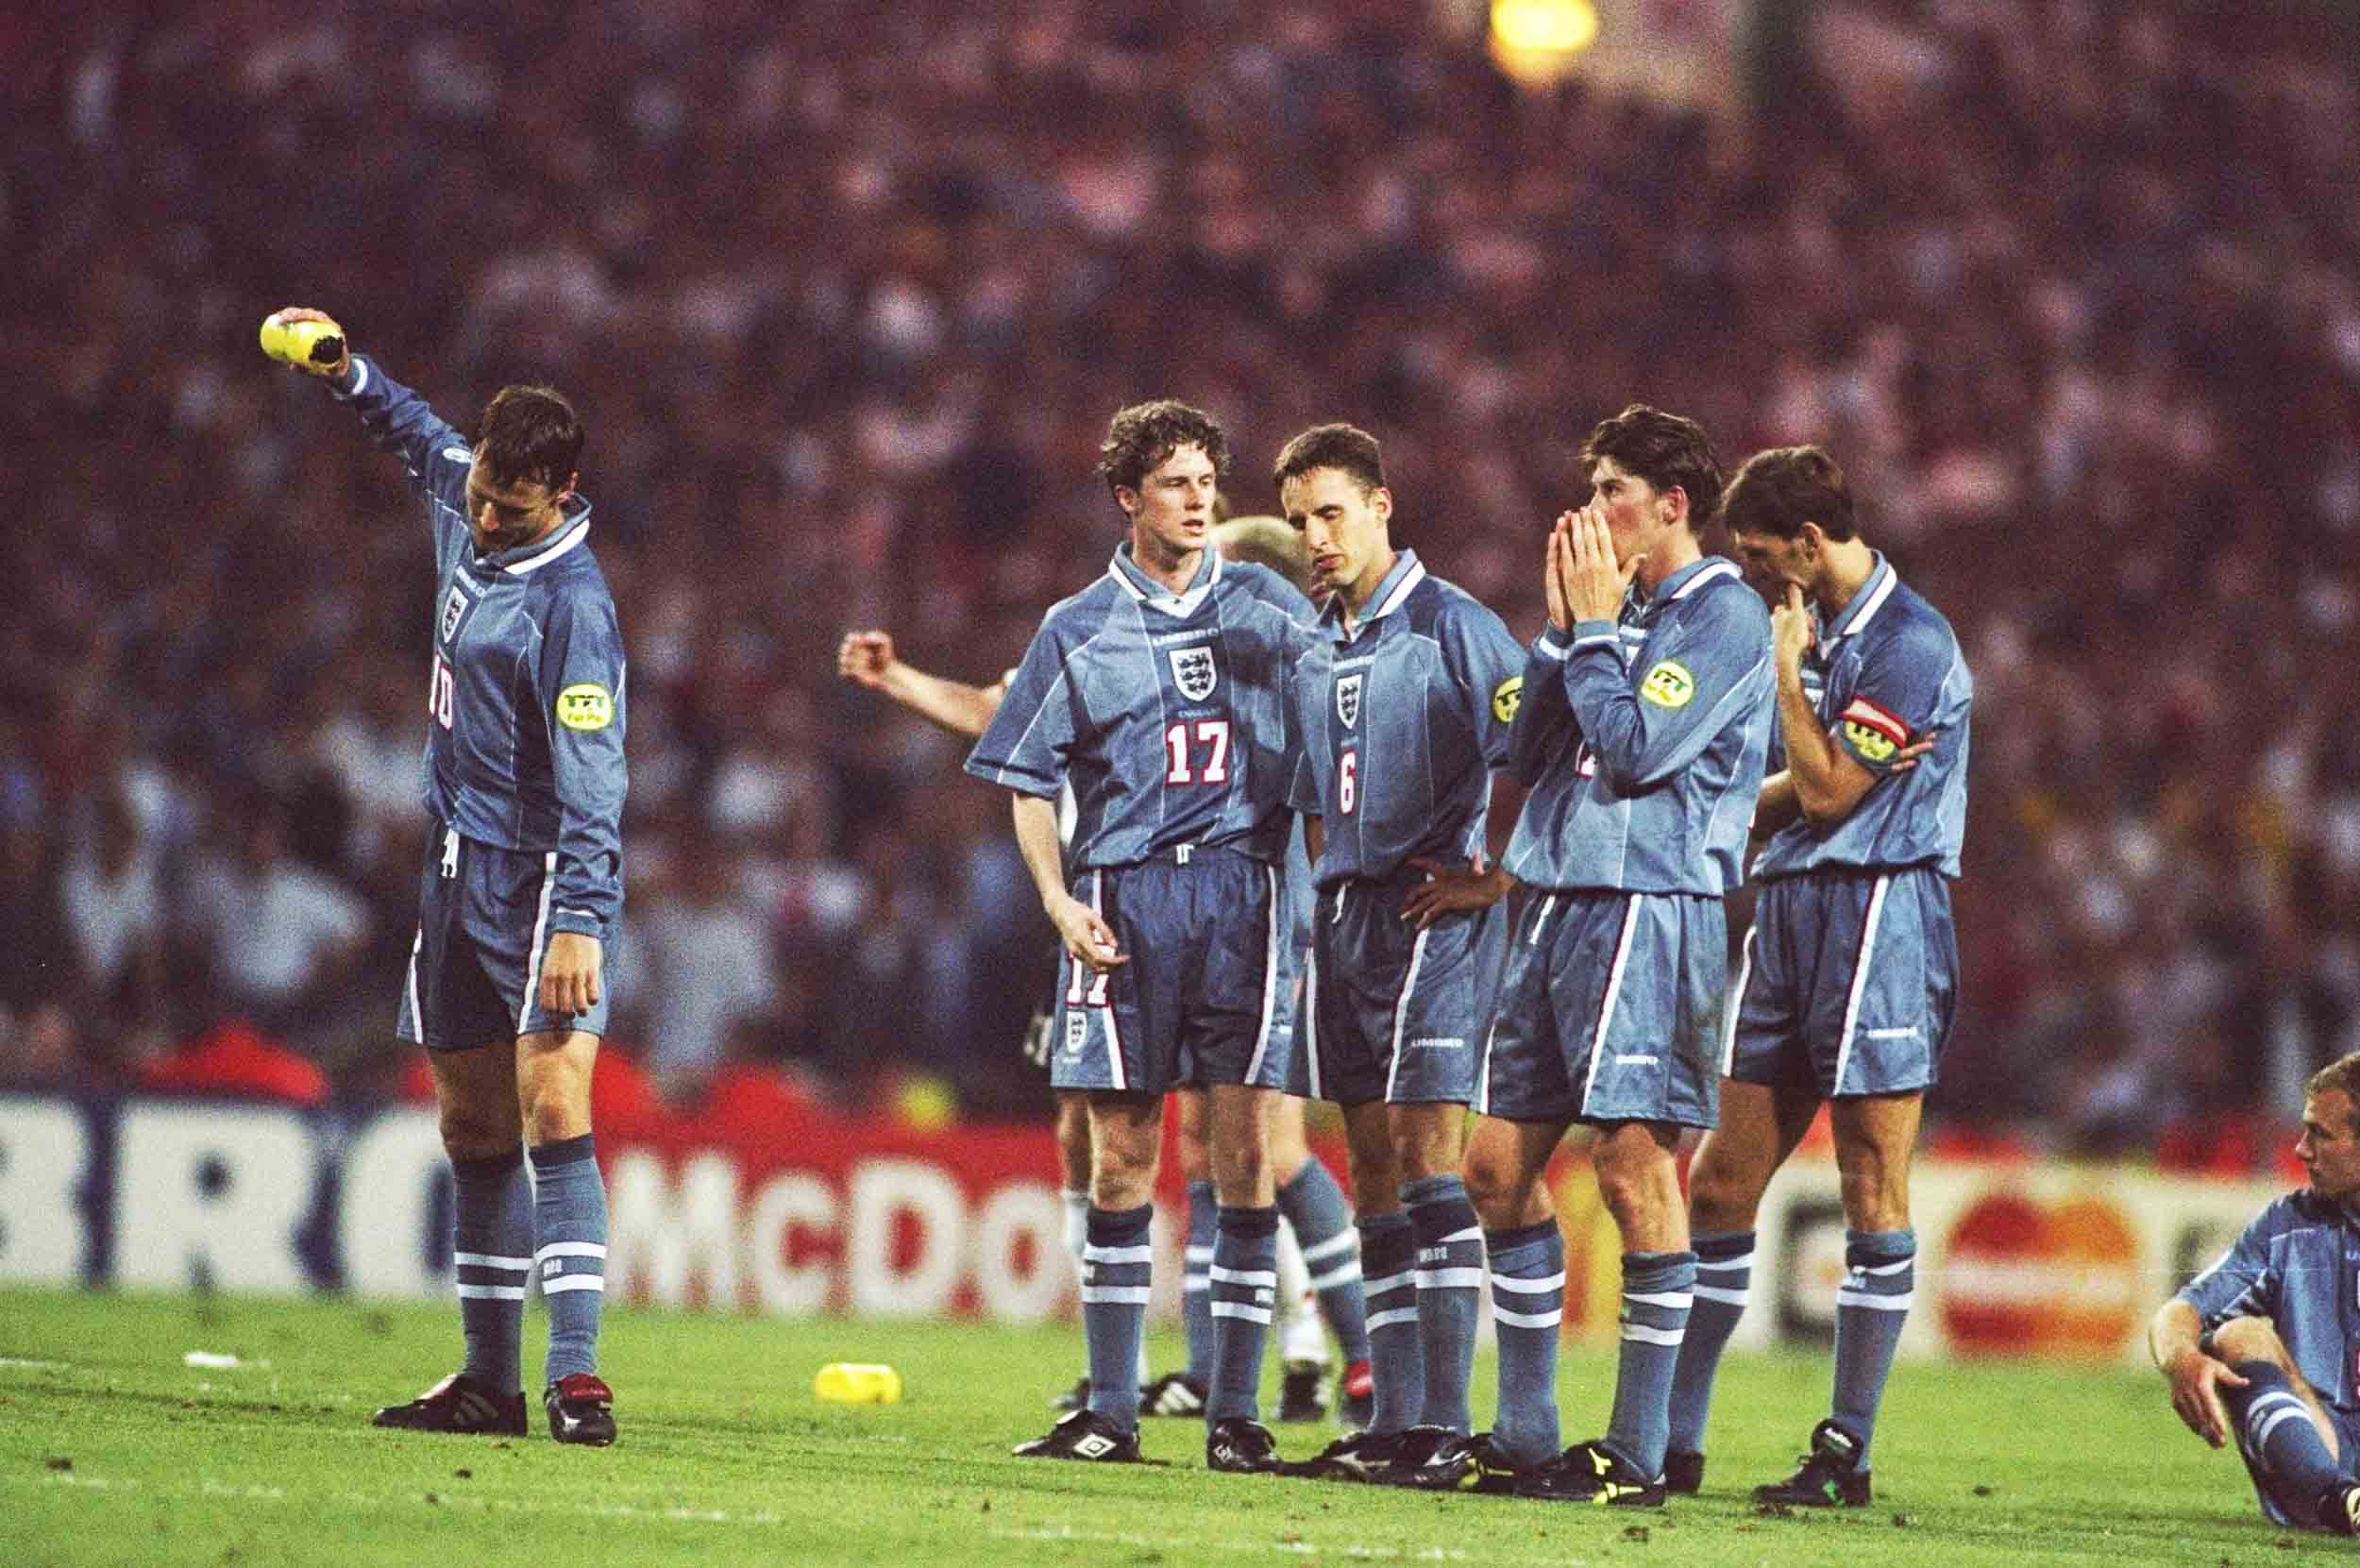 1996 England Away jersey